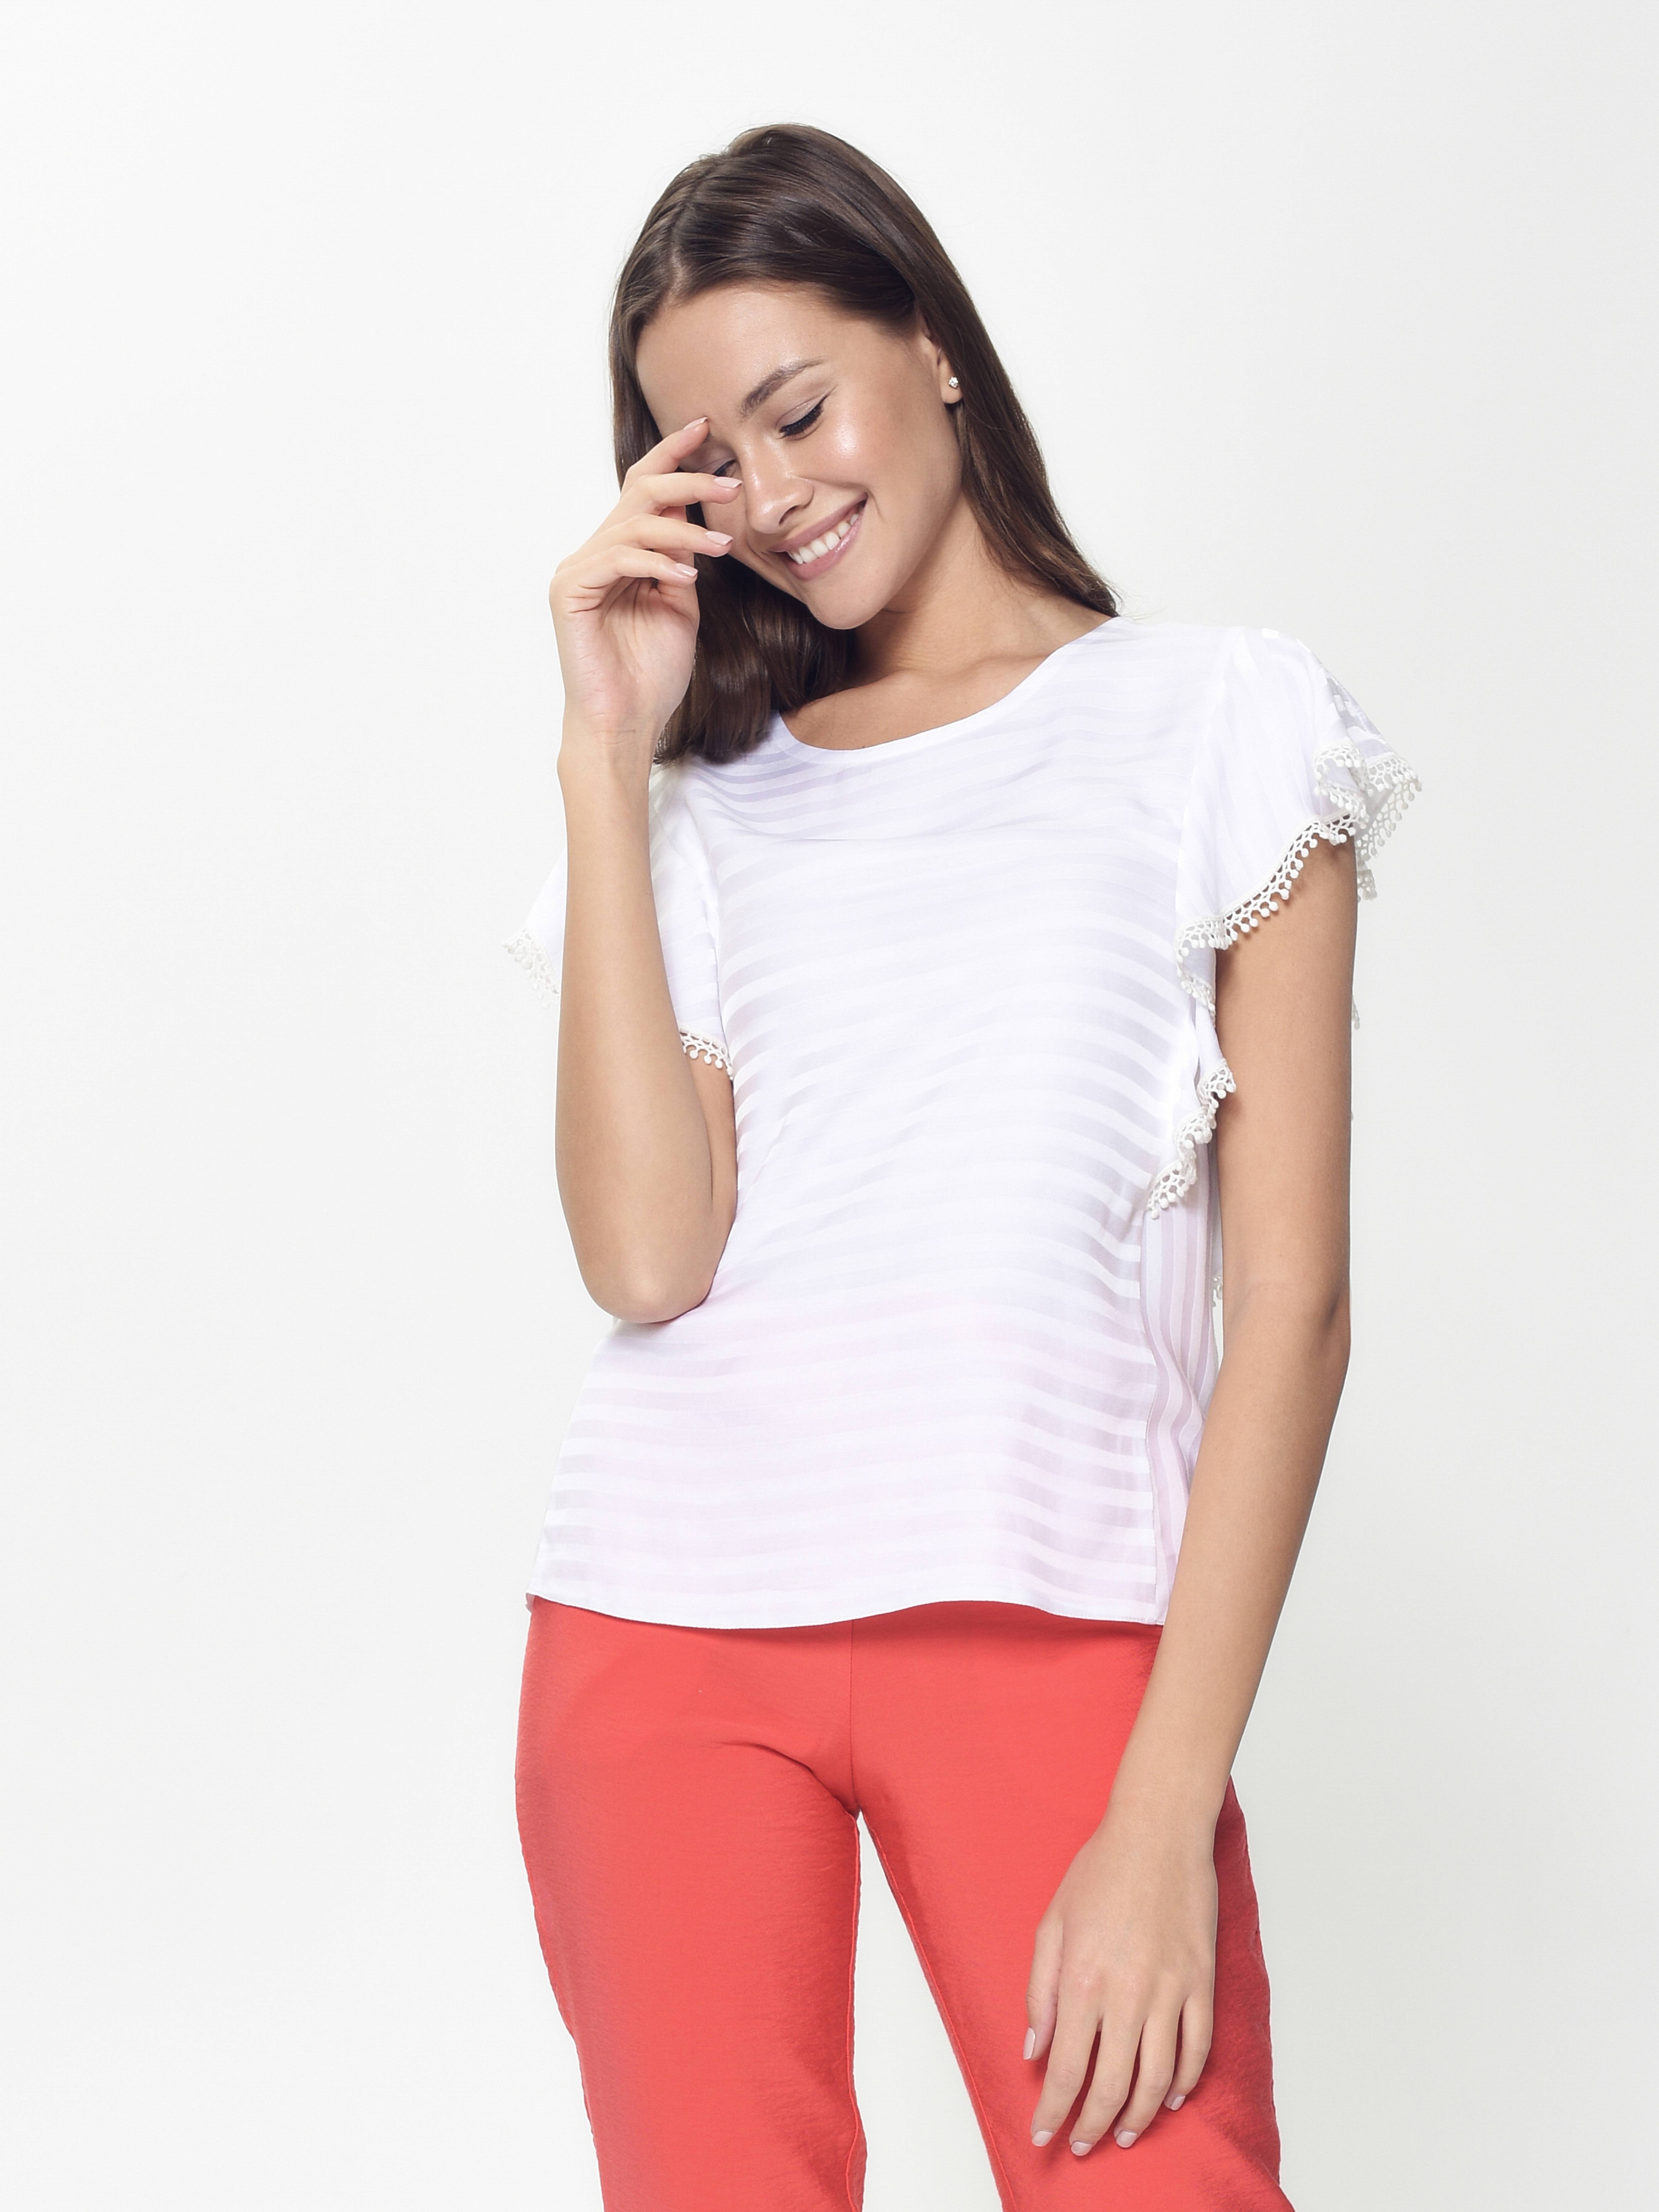 Ультрамодная шелковистая блузка с воланами LBL 908 Conte ⭐️, цвет white, размер 170-84-90